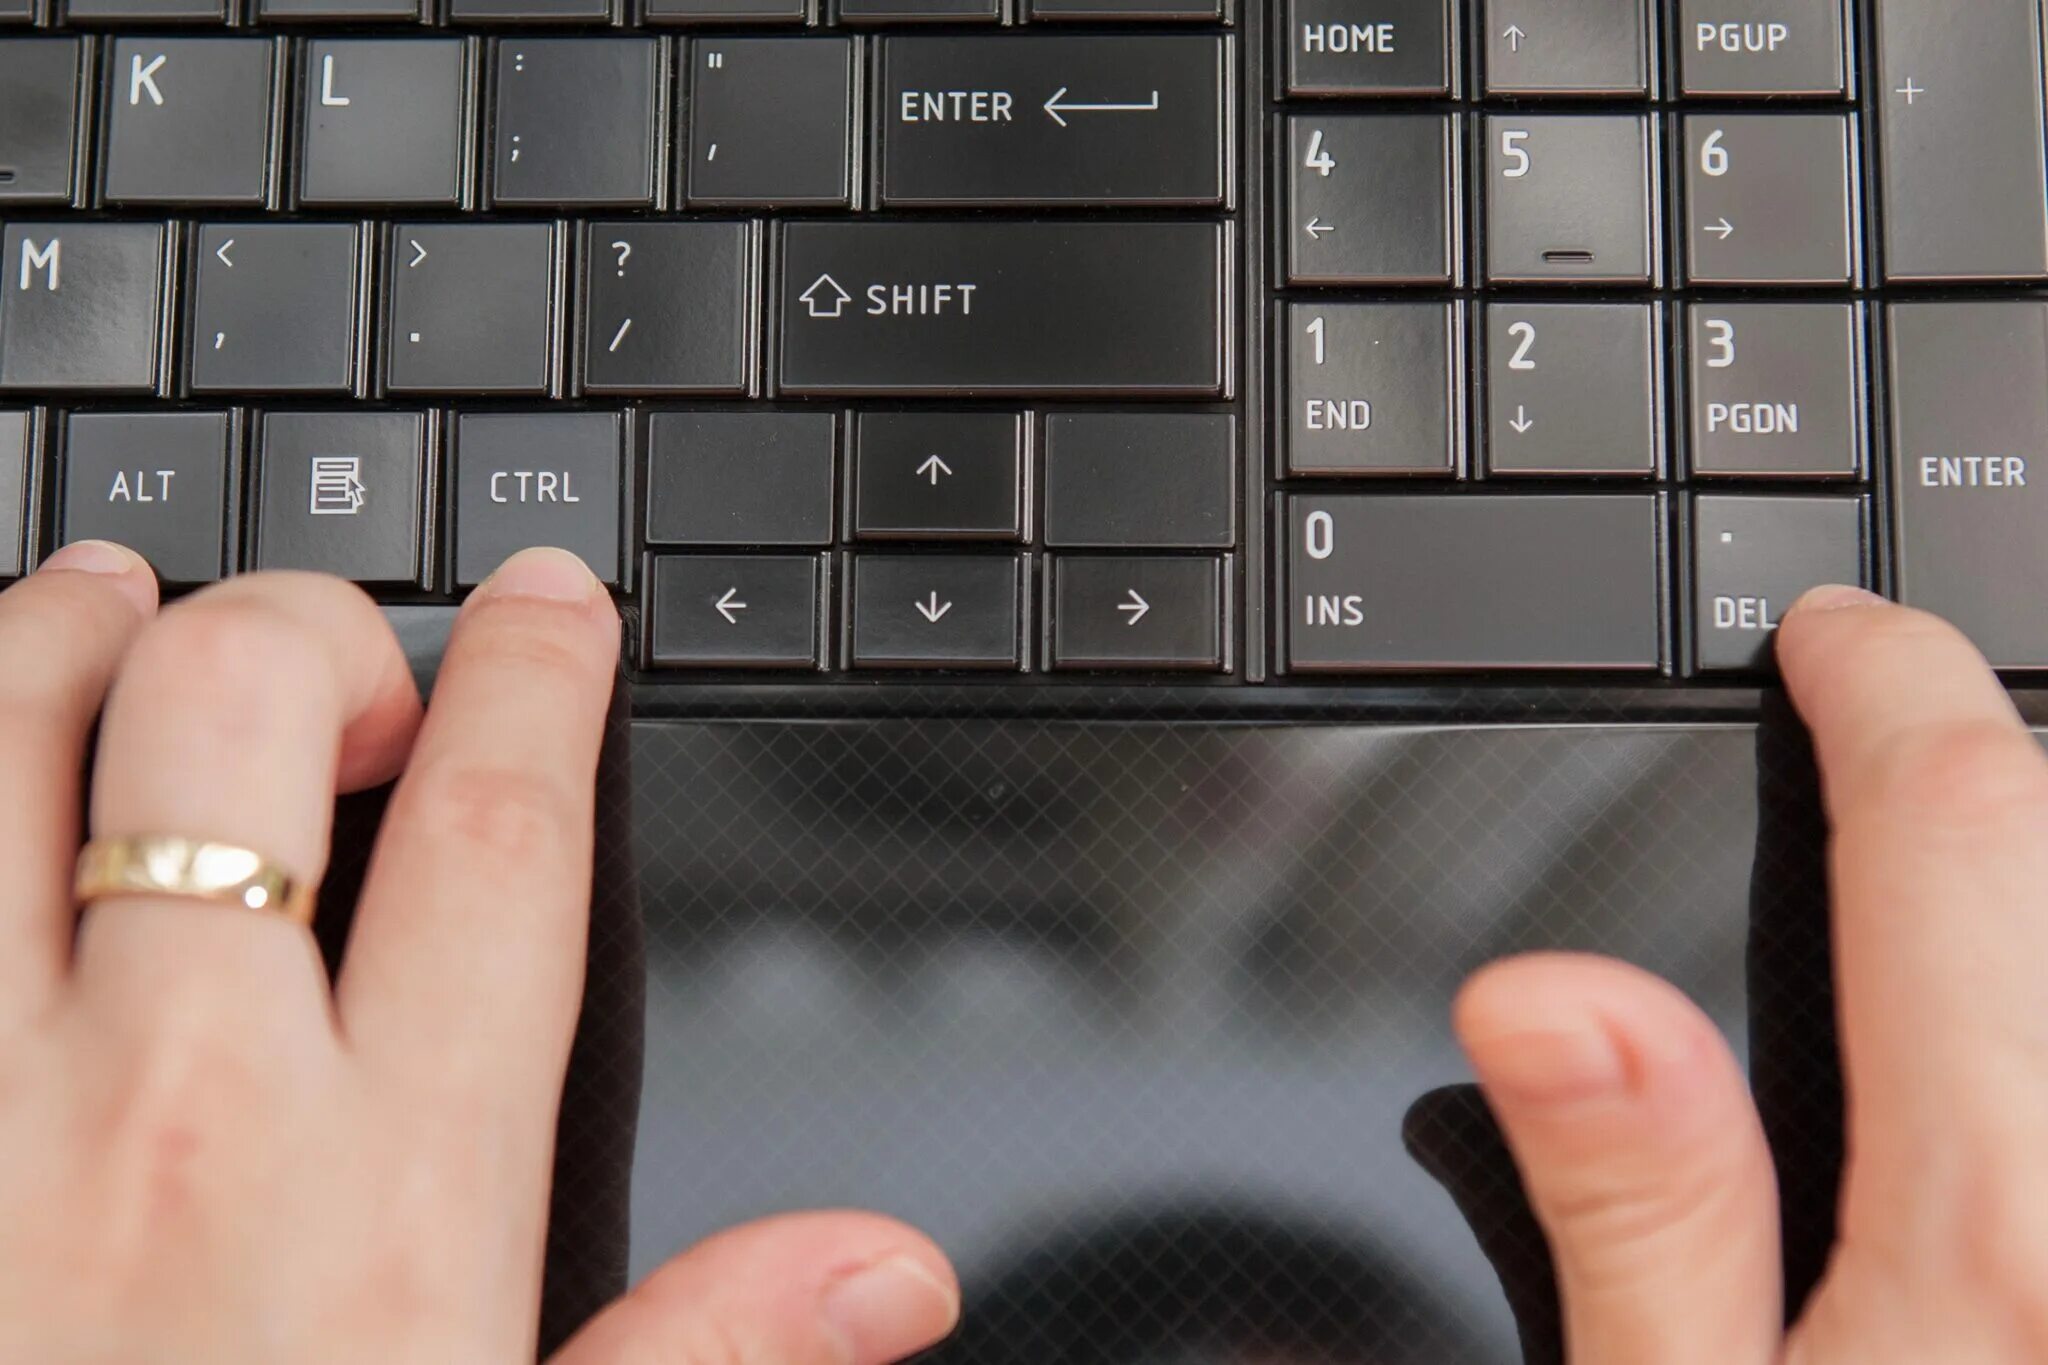 Enter shift клавиши. Кнопки для перезагрузки ноутбука асус. Перезагрузить ноутбук с помощью клавиатуры. Кнопка перезагрузки на клавиатуре. Перезагрузка компьютера с помощью клавиатуры.